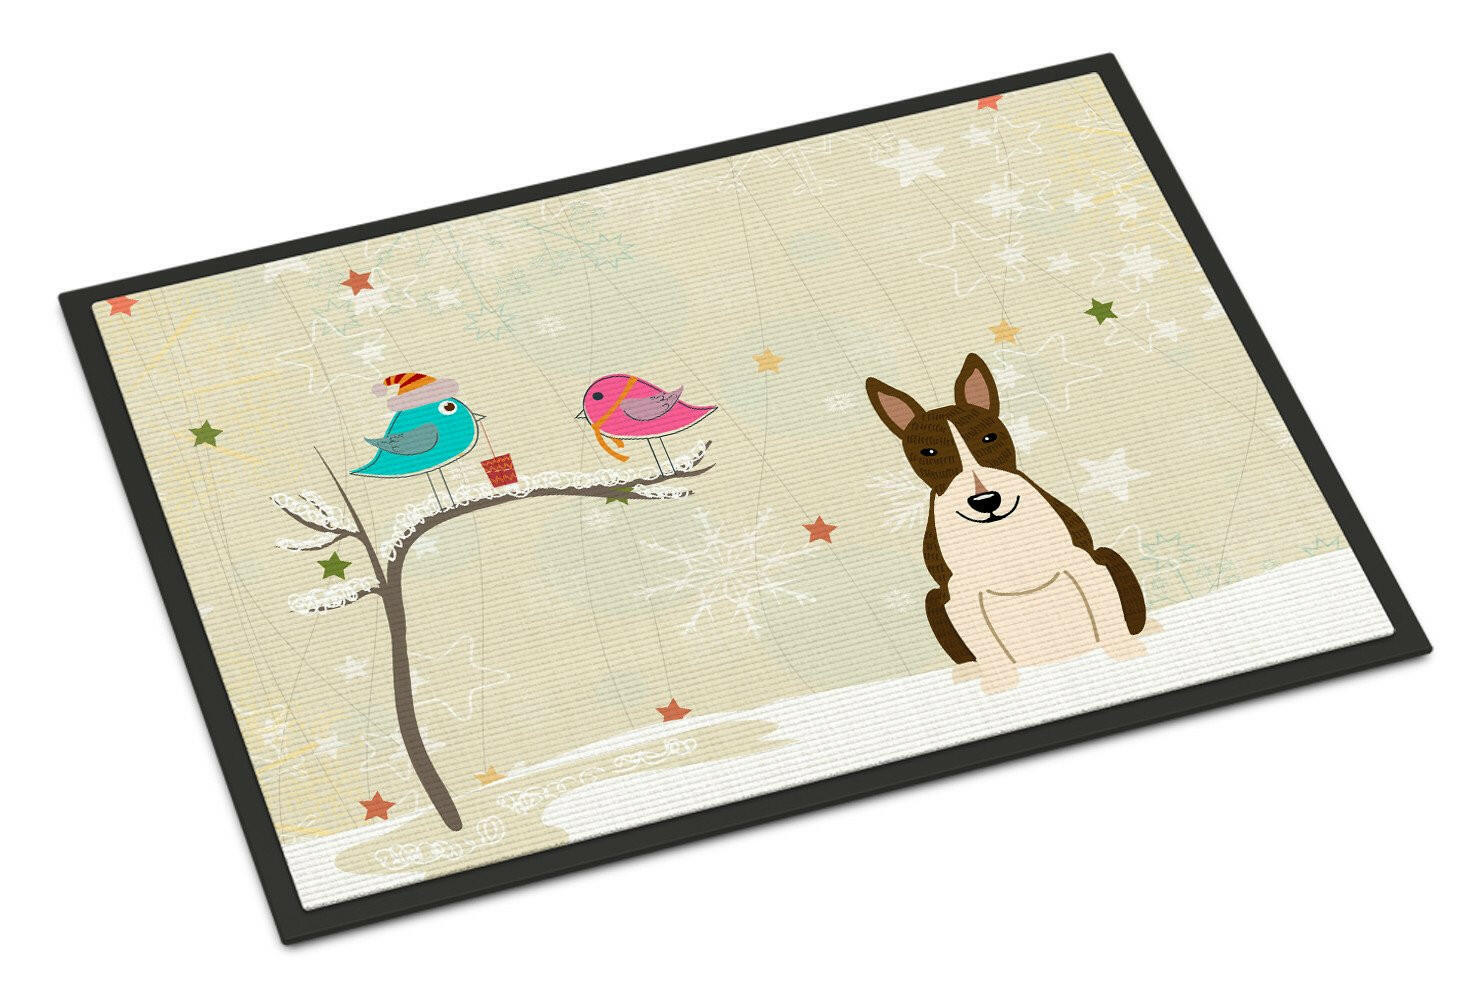 Christmas Presents between Friends Bull Terrier Dark Brindle Indoor or Outdoor Mat 18x27 BB2608MAT - the-store.com